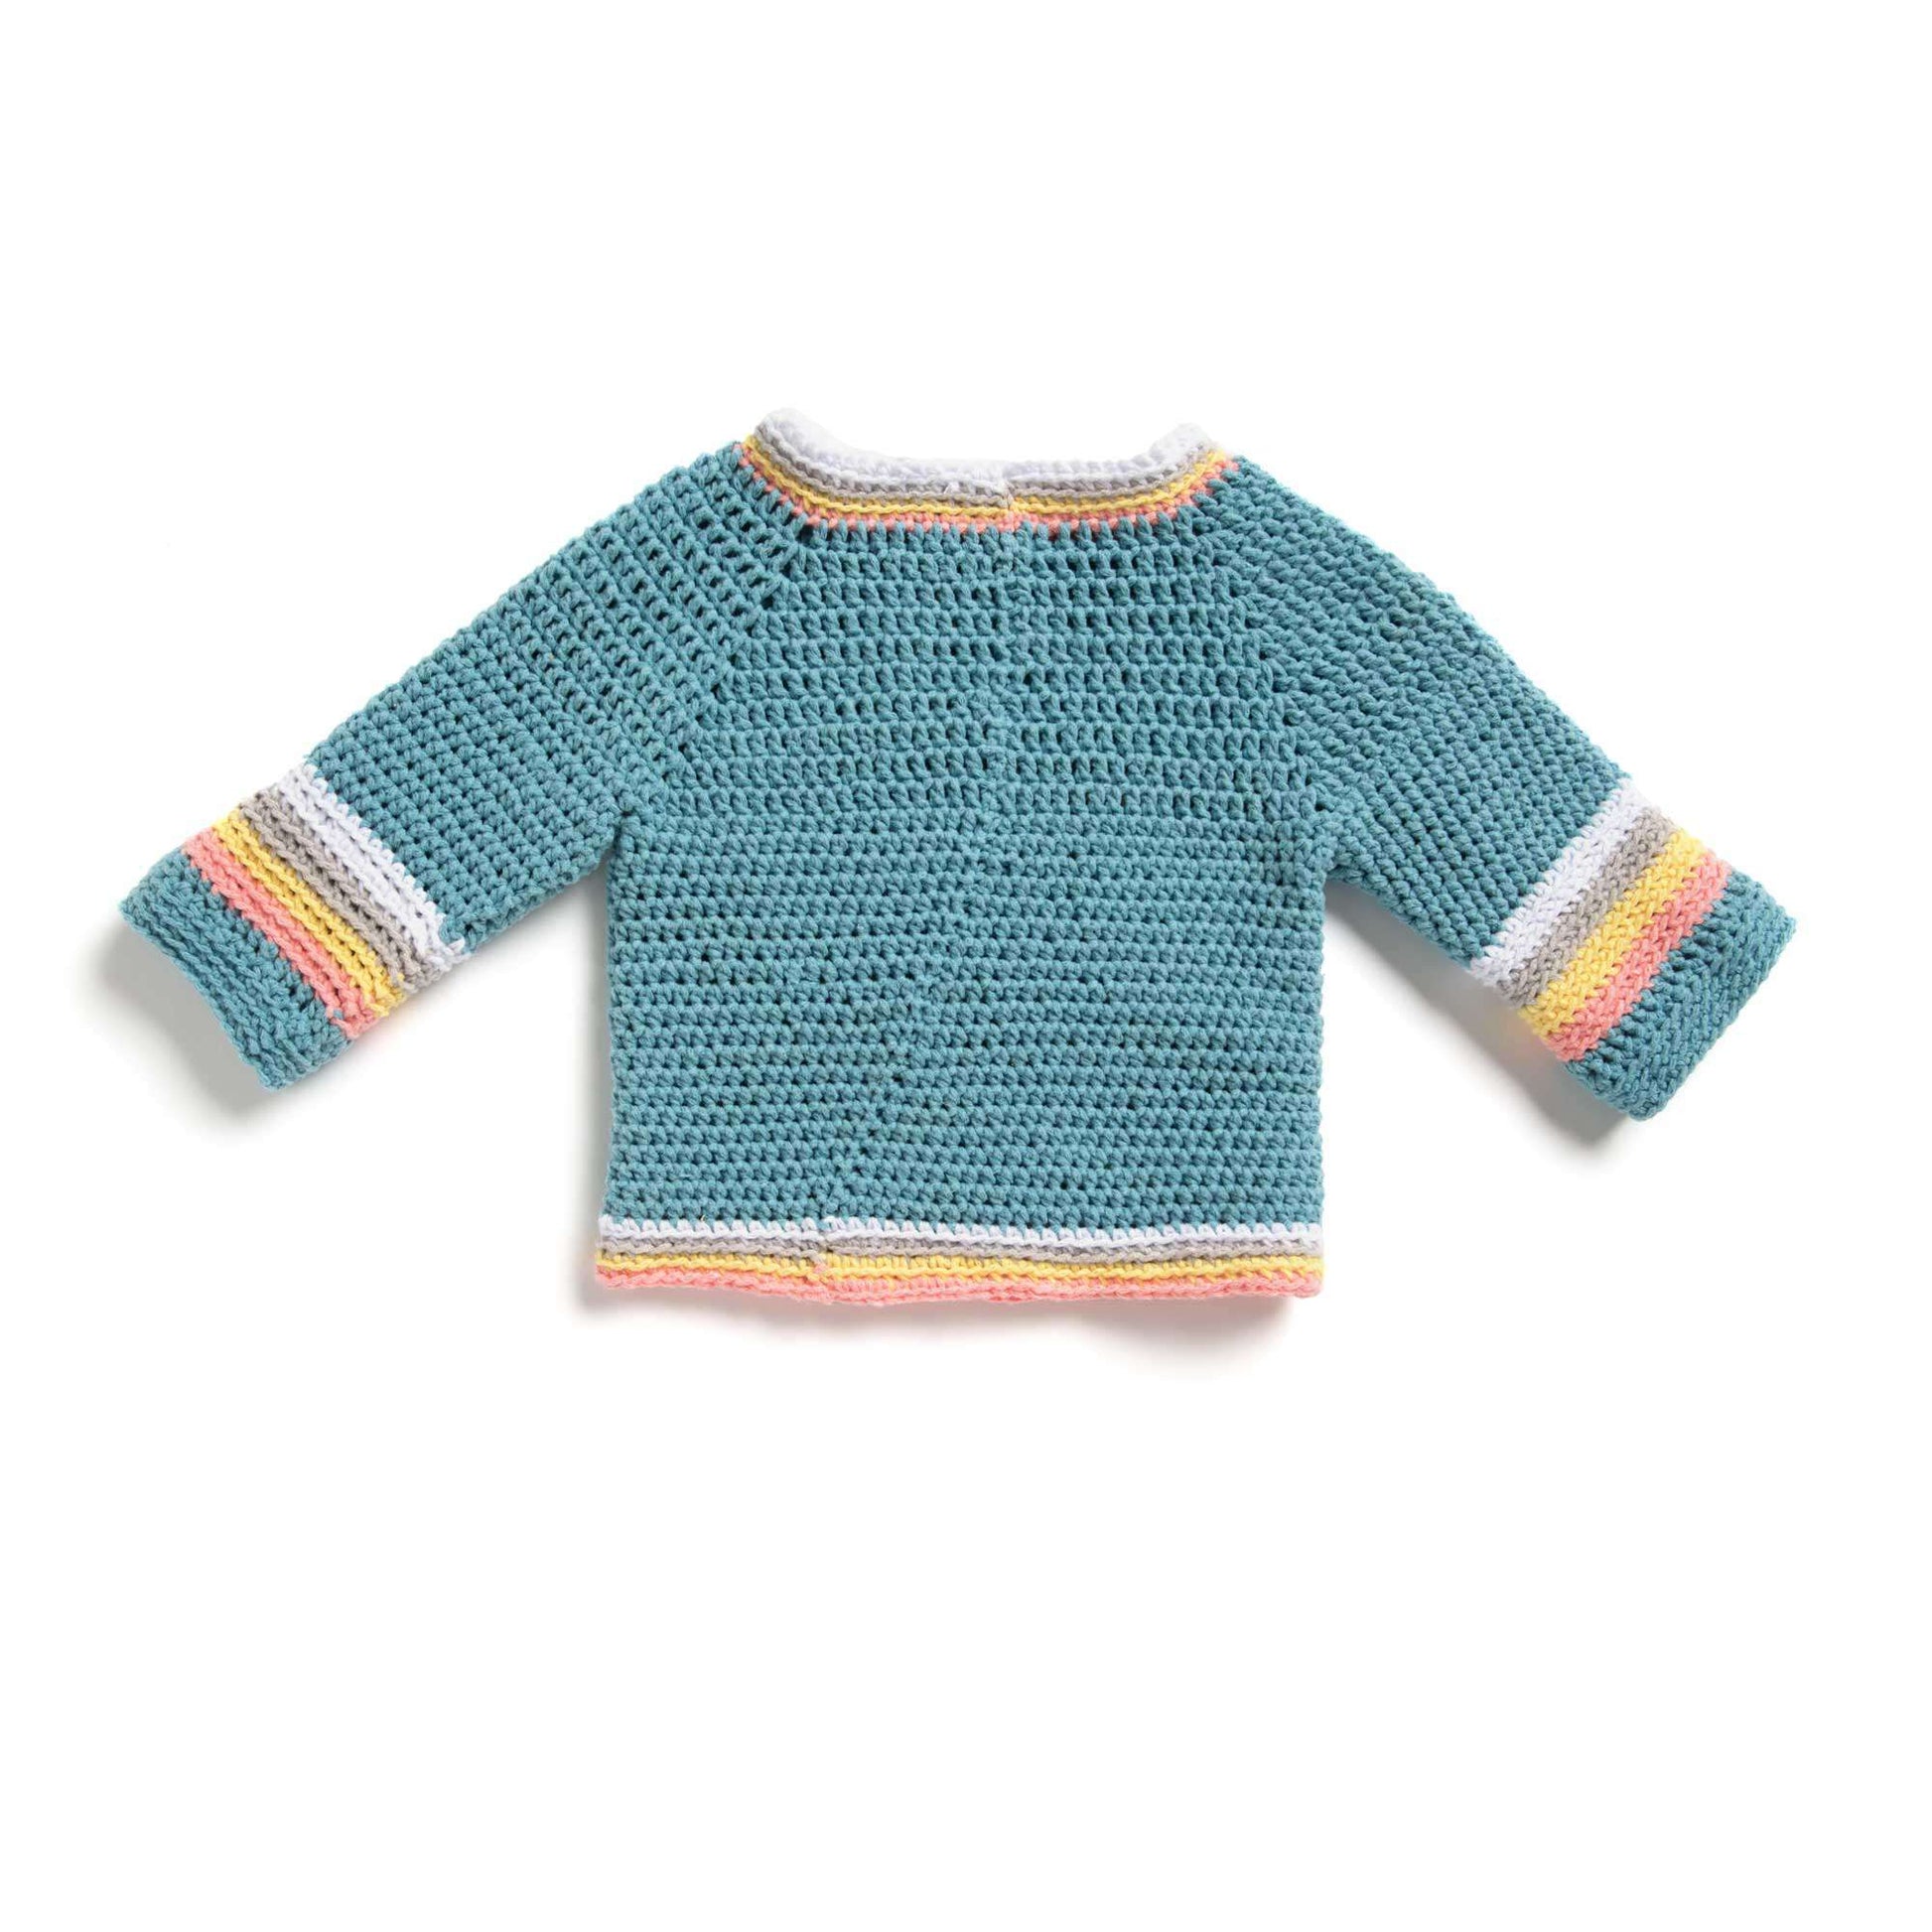 Bernat Crochet Saturn Baby Pullover 6 mos